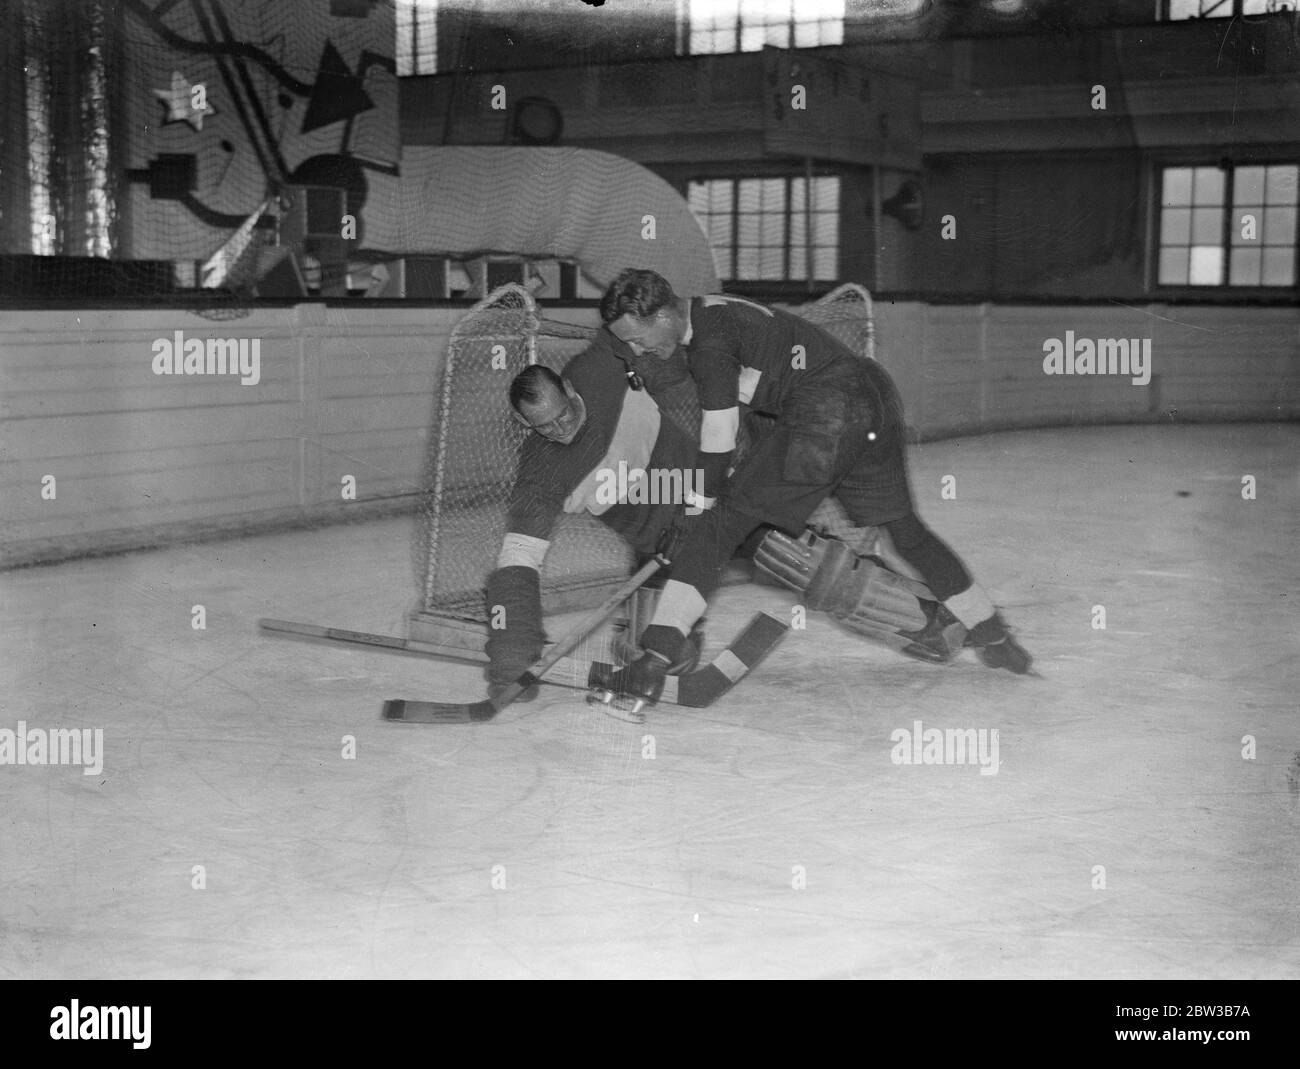 Goalie hockey Black and White Stock Photos & Images - Alamy